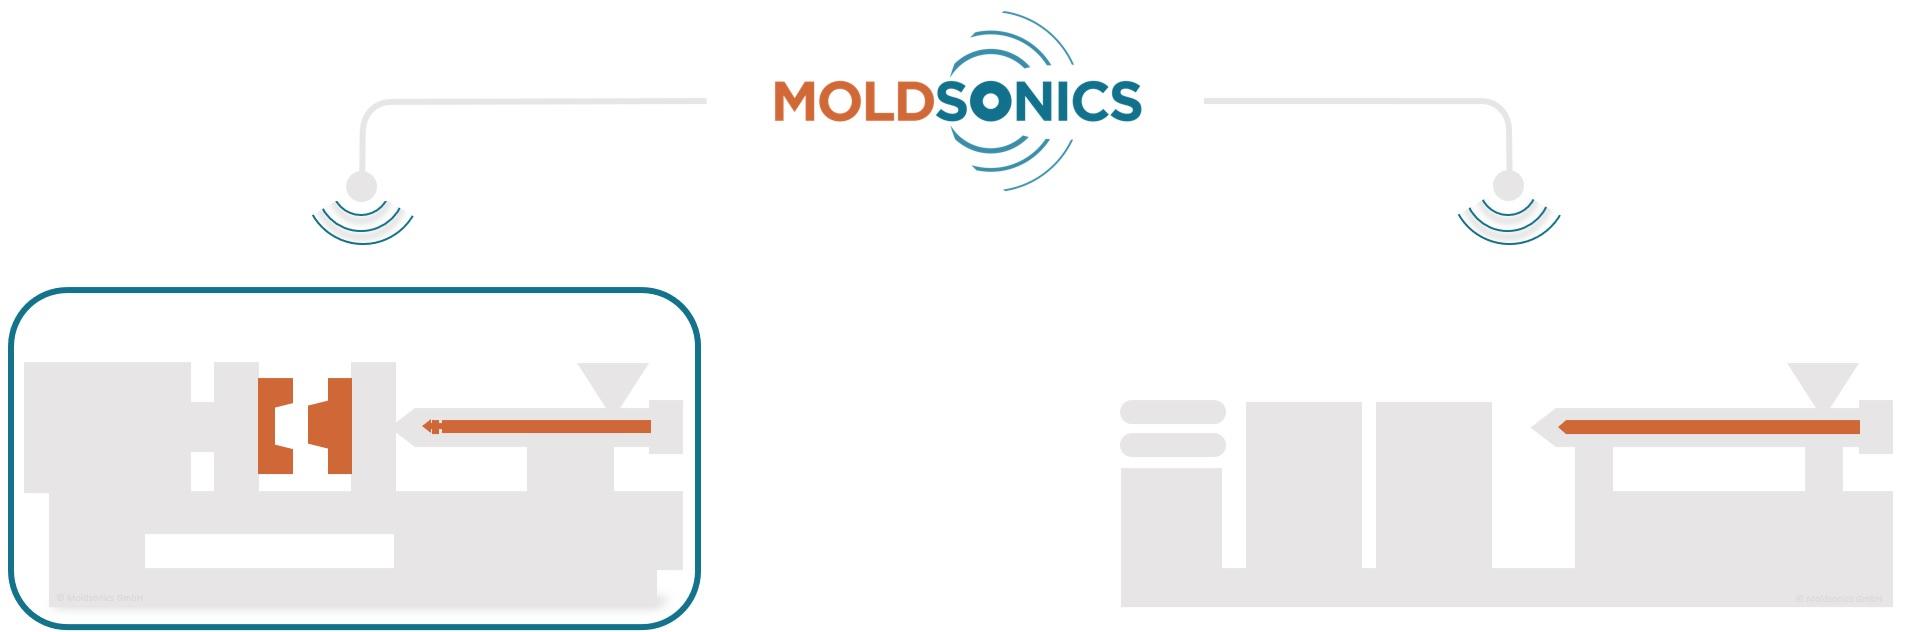 Bild der Moldsonics Anwendungsbereiche (Spritzgieß- und Extrusionsbereich)